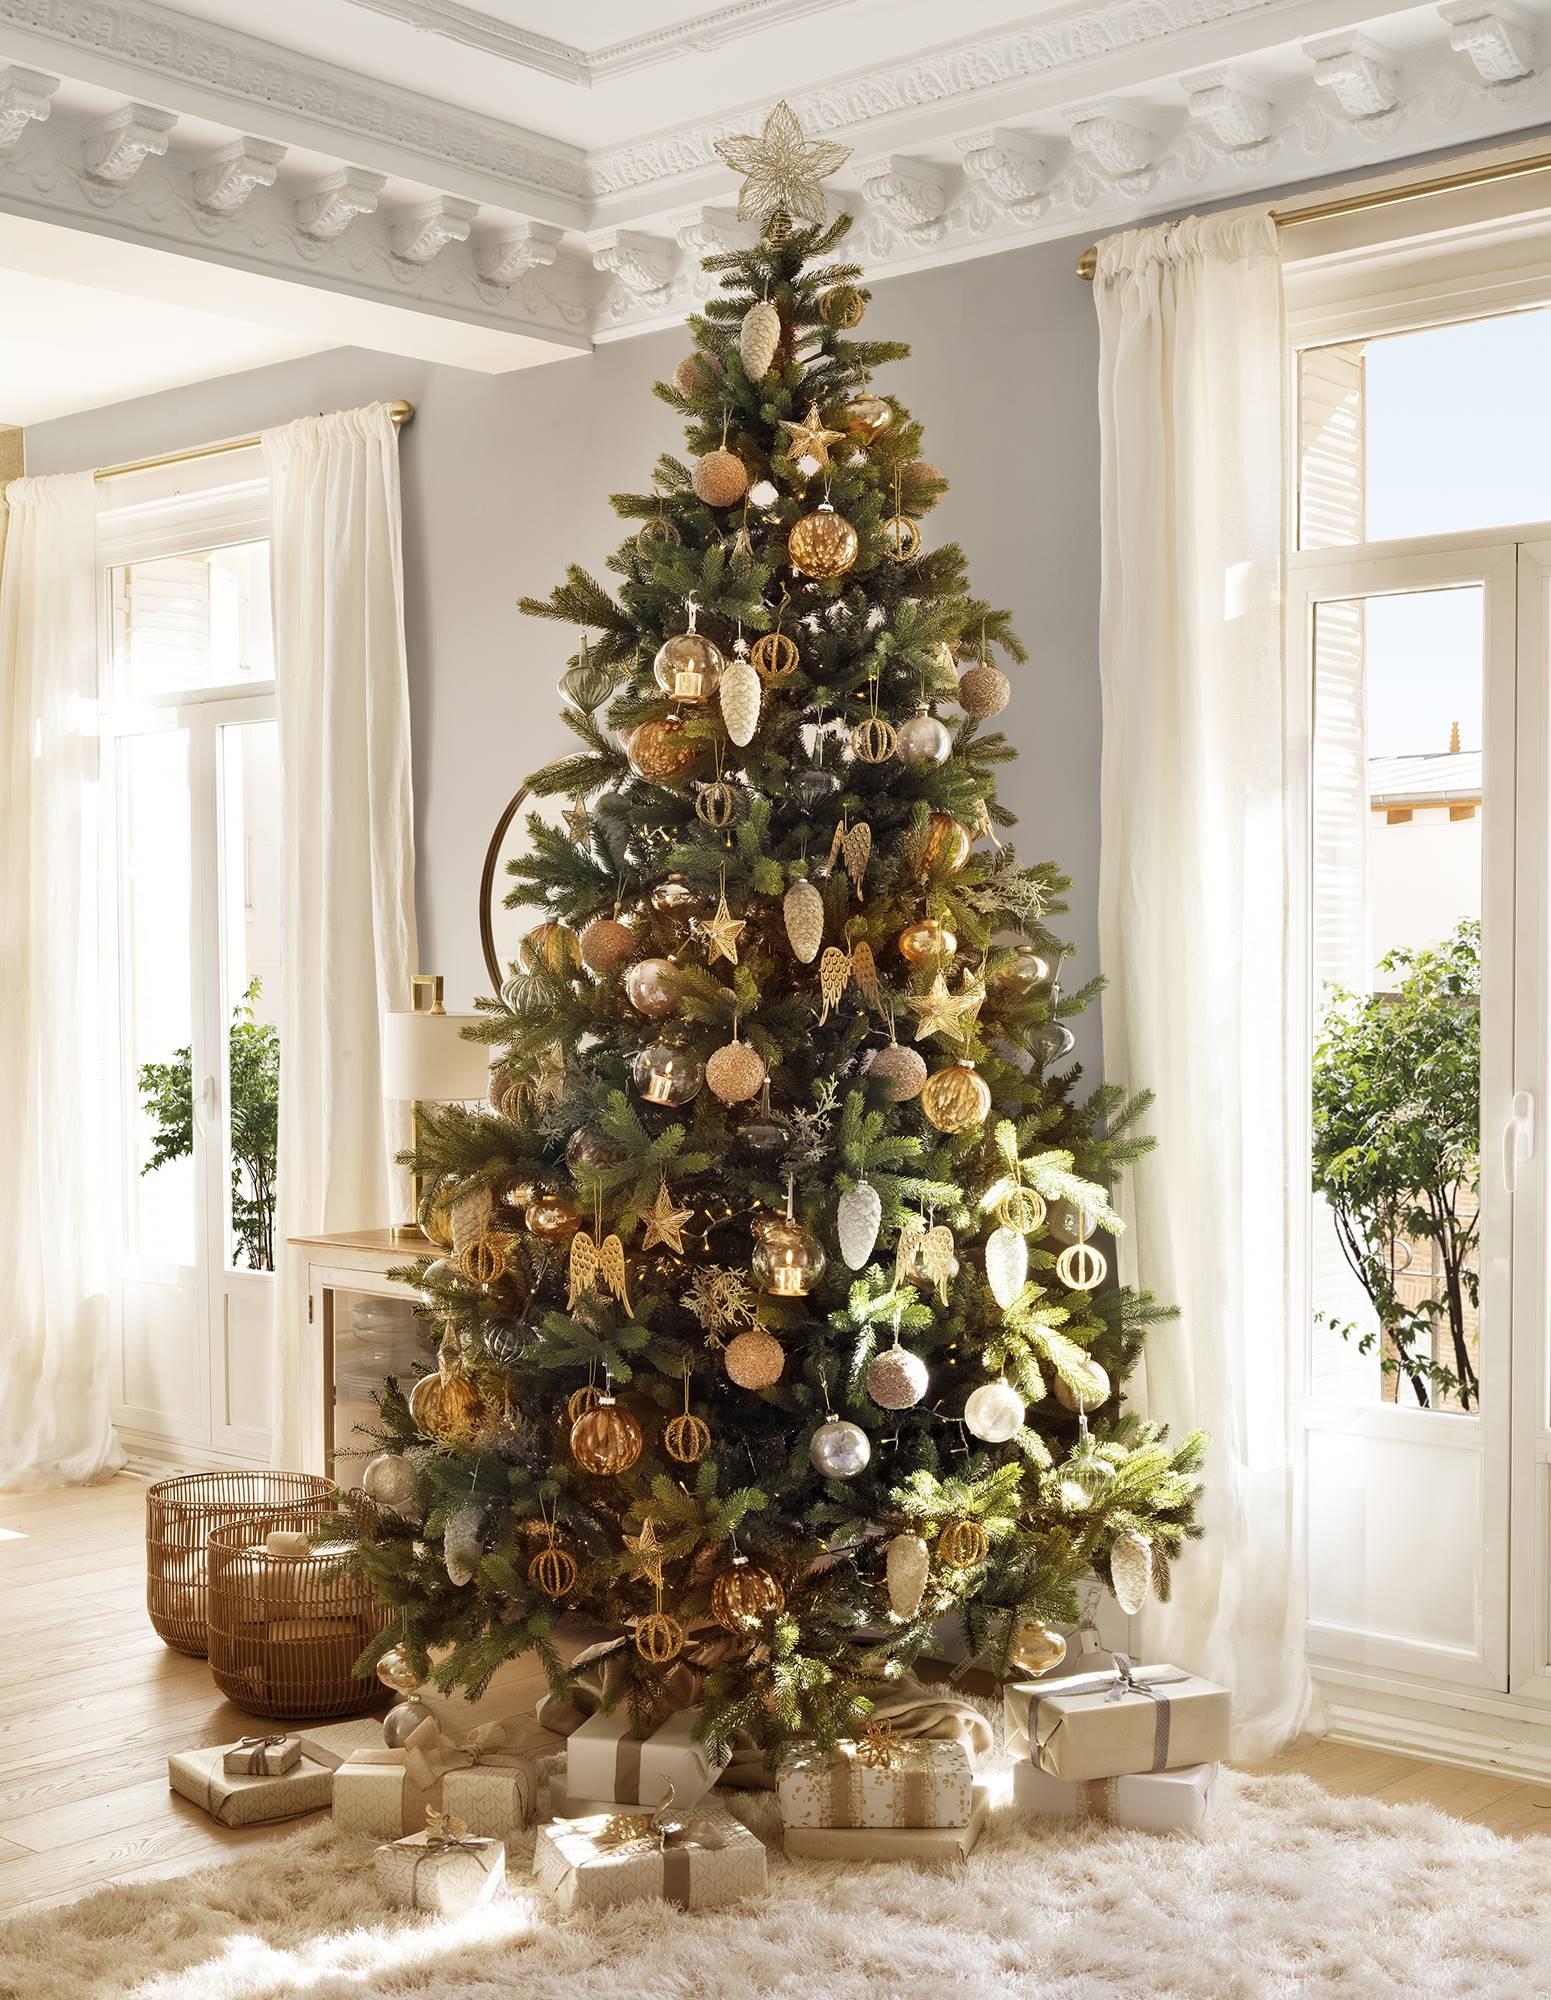 Un árbol de Navidad con decoración en dorado y plateado.